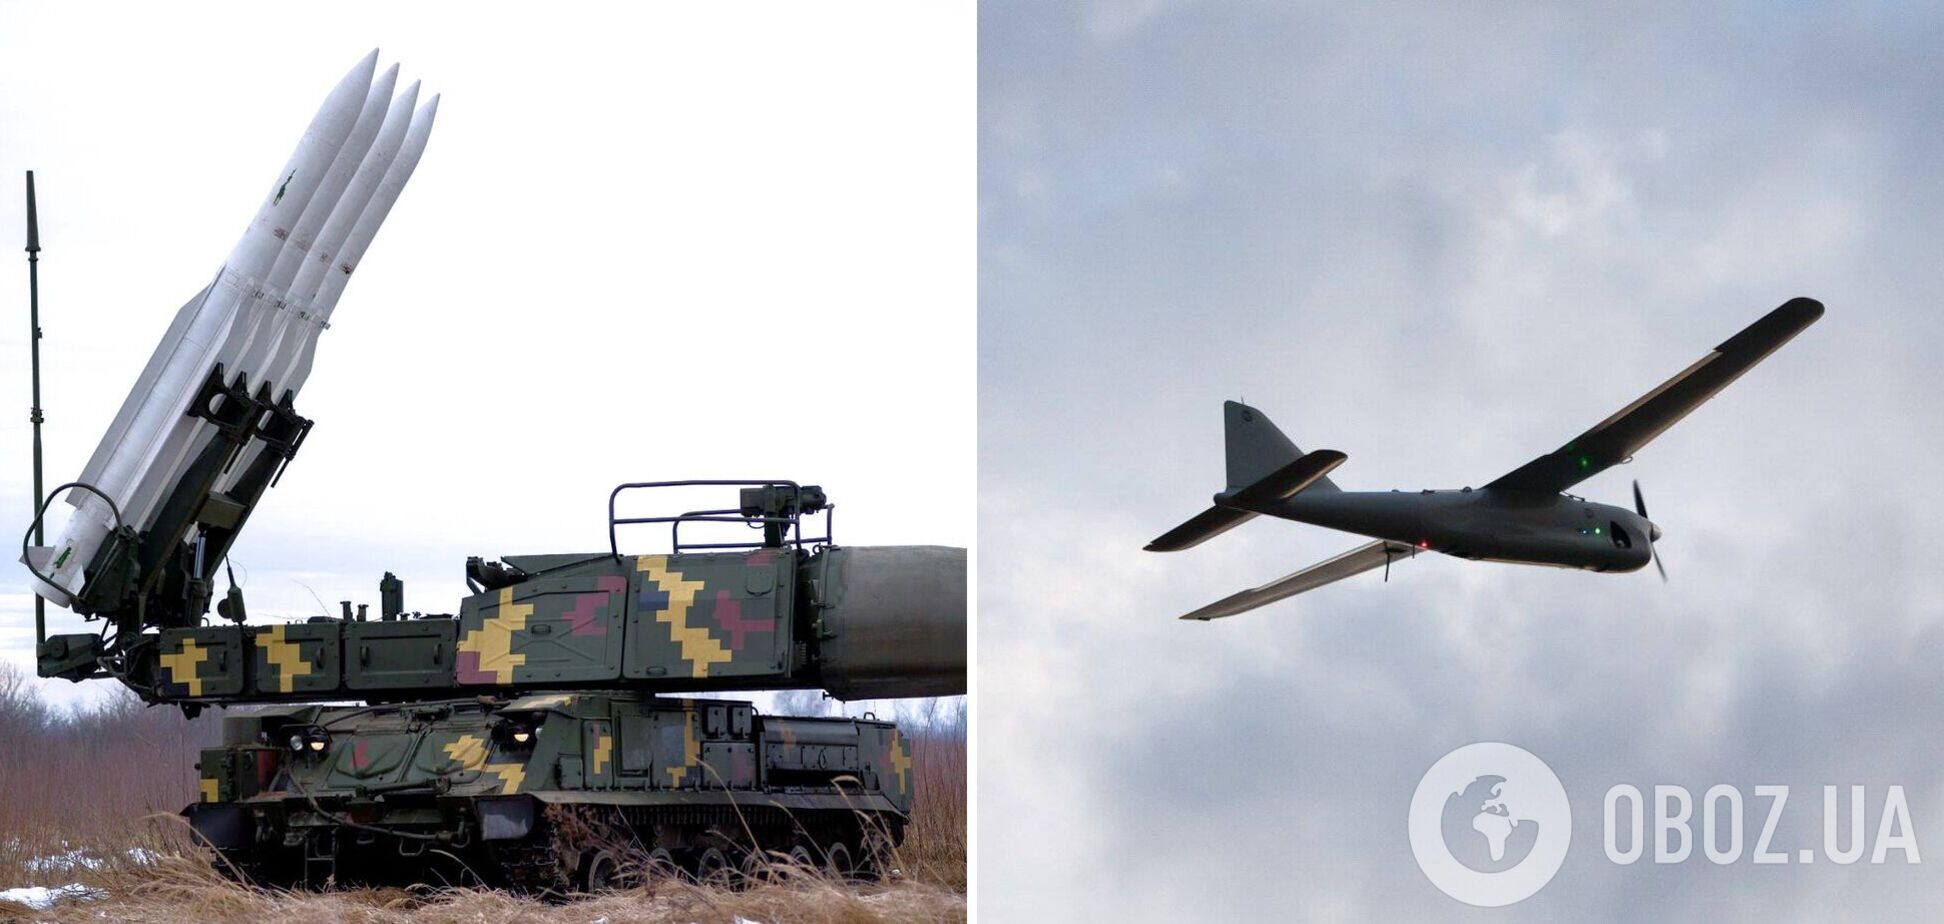 Захисники українського неба за добу знищили 7 ворожих повітряних цілей та до 30 бойових броньованих машин